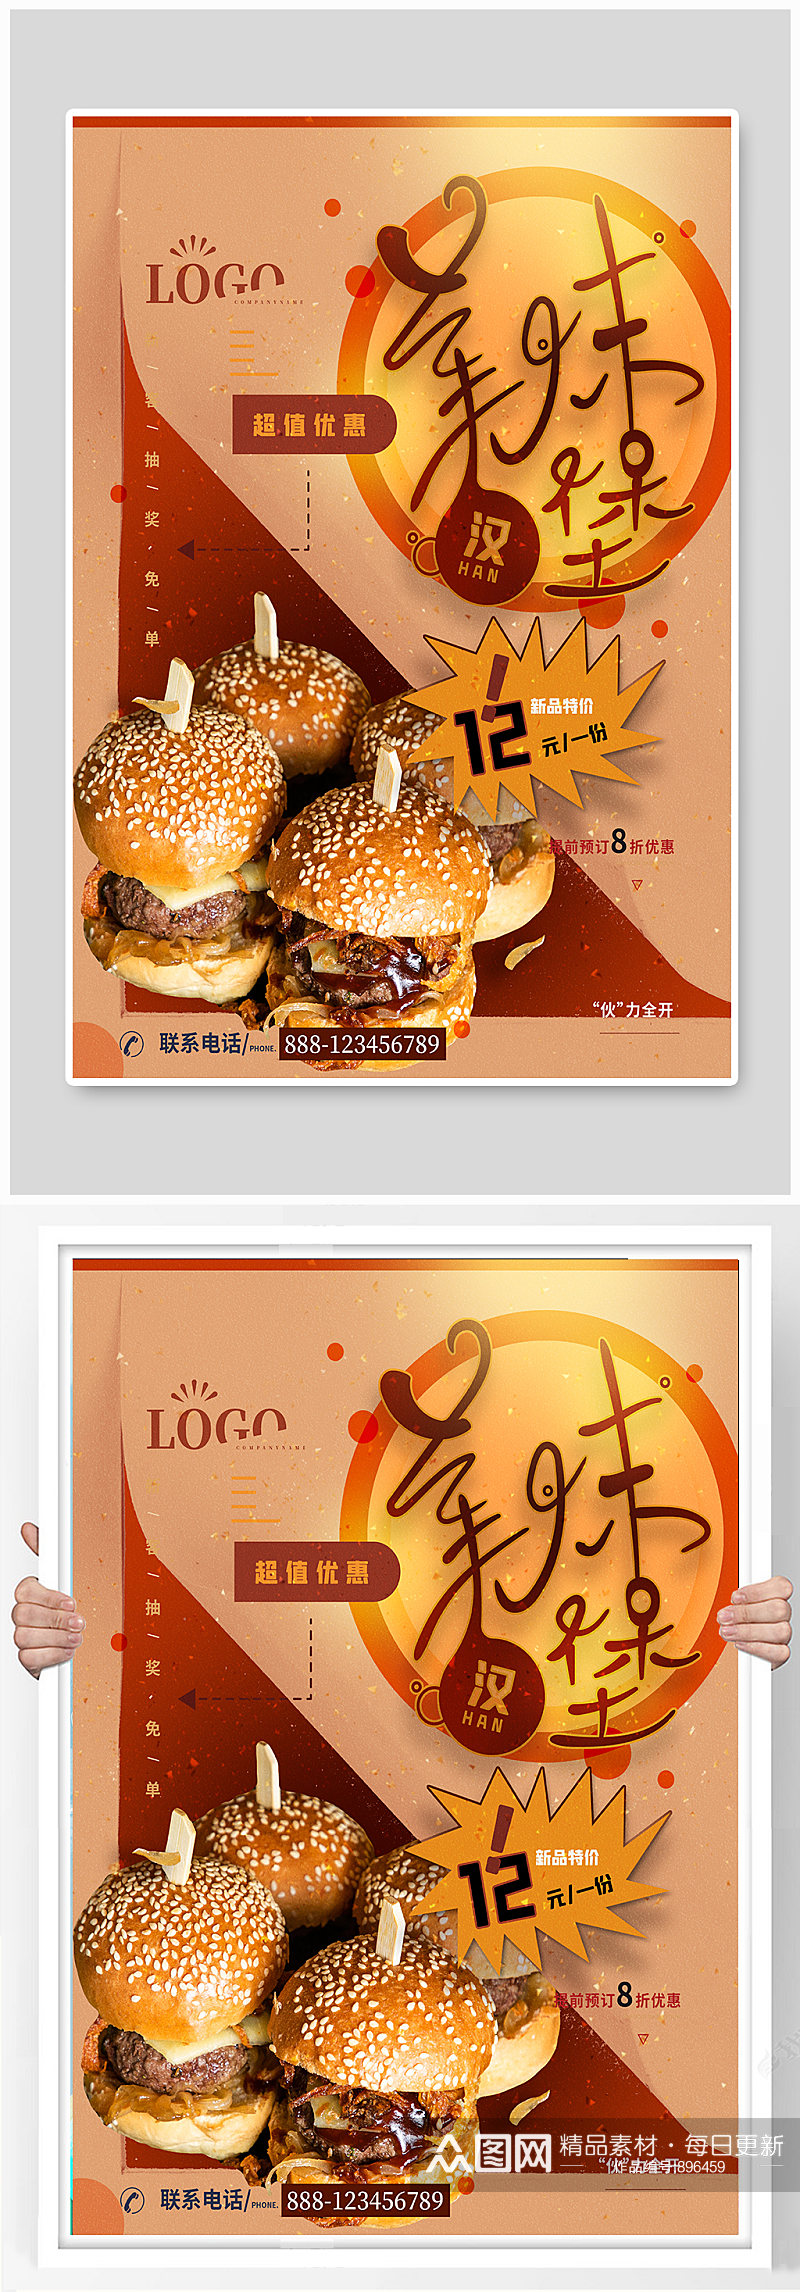 美味汉堡快餐店创意促销海报素材